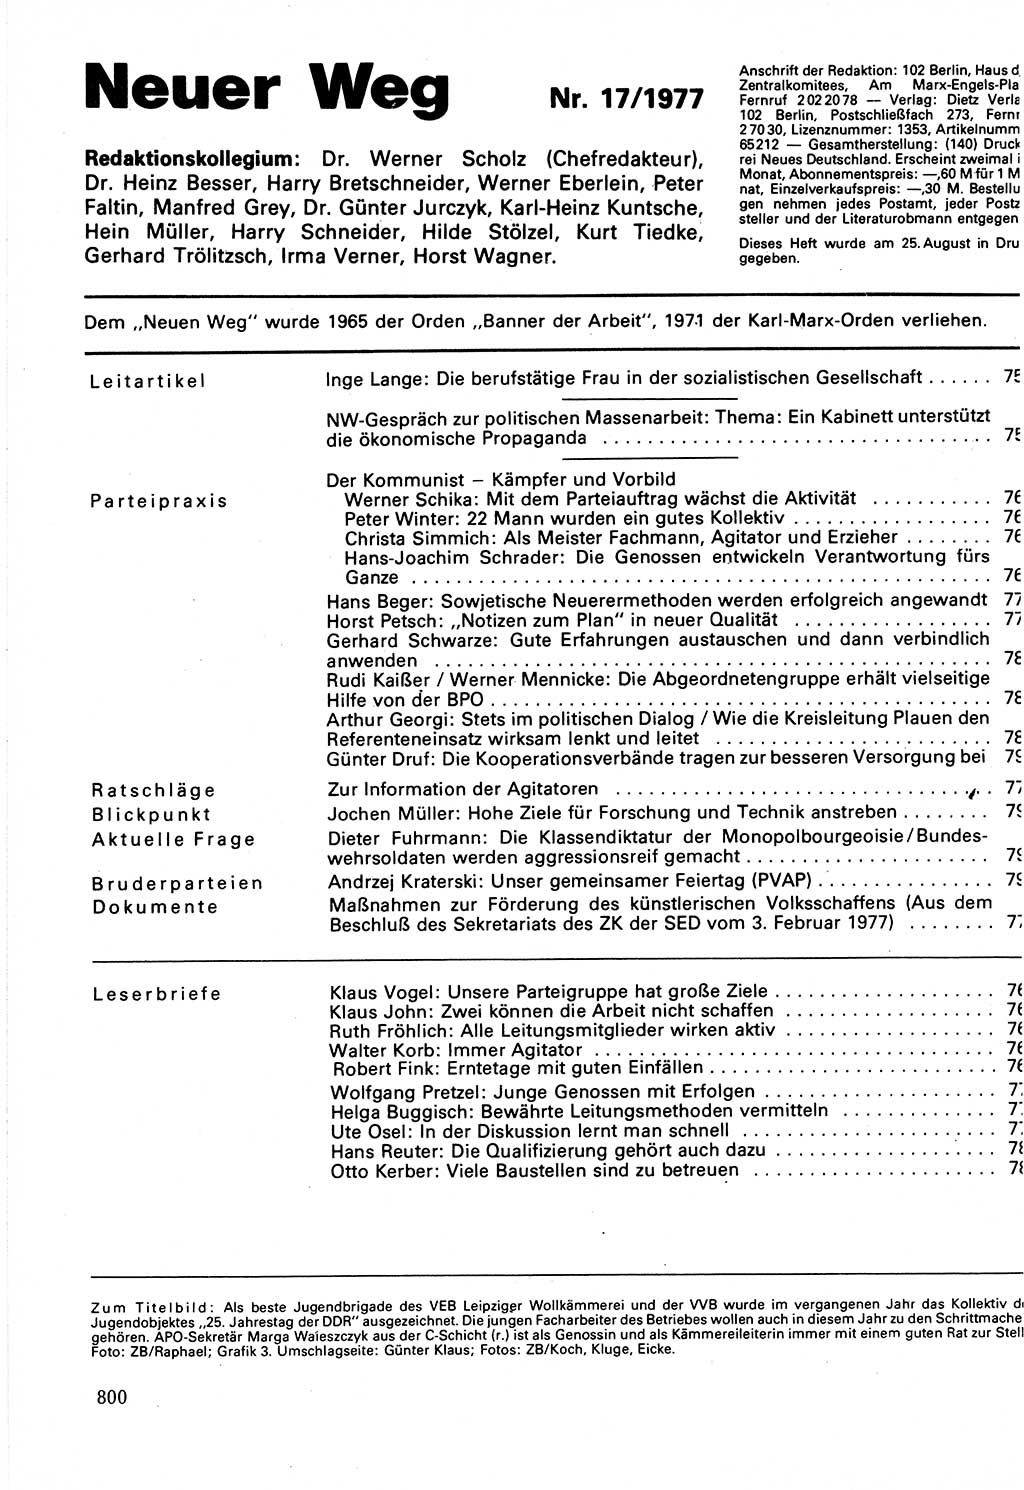 Neuer Weg (NW), Organ des Zentralkomitees (ZK) der SED (Sozialistische Einheitspartei Deutschlands) für Fragen des Parteilebens, 32. Jahrgang [Deutsche Demokratische Republik (DDR)] 1977, Seite 800 (NW ZK SED DDR 1977, S. 800)